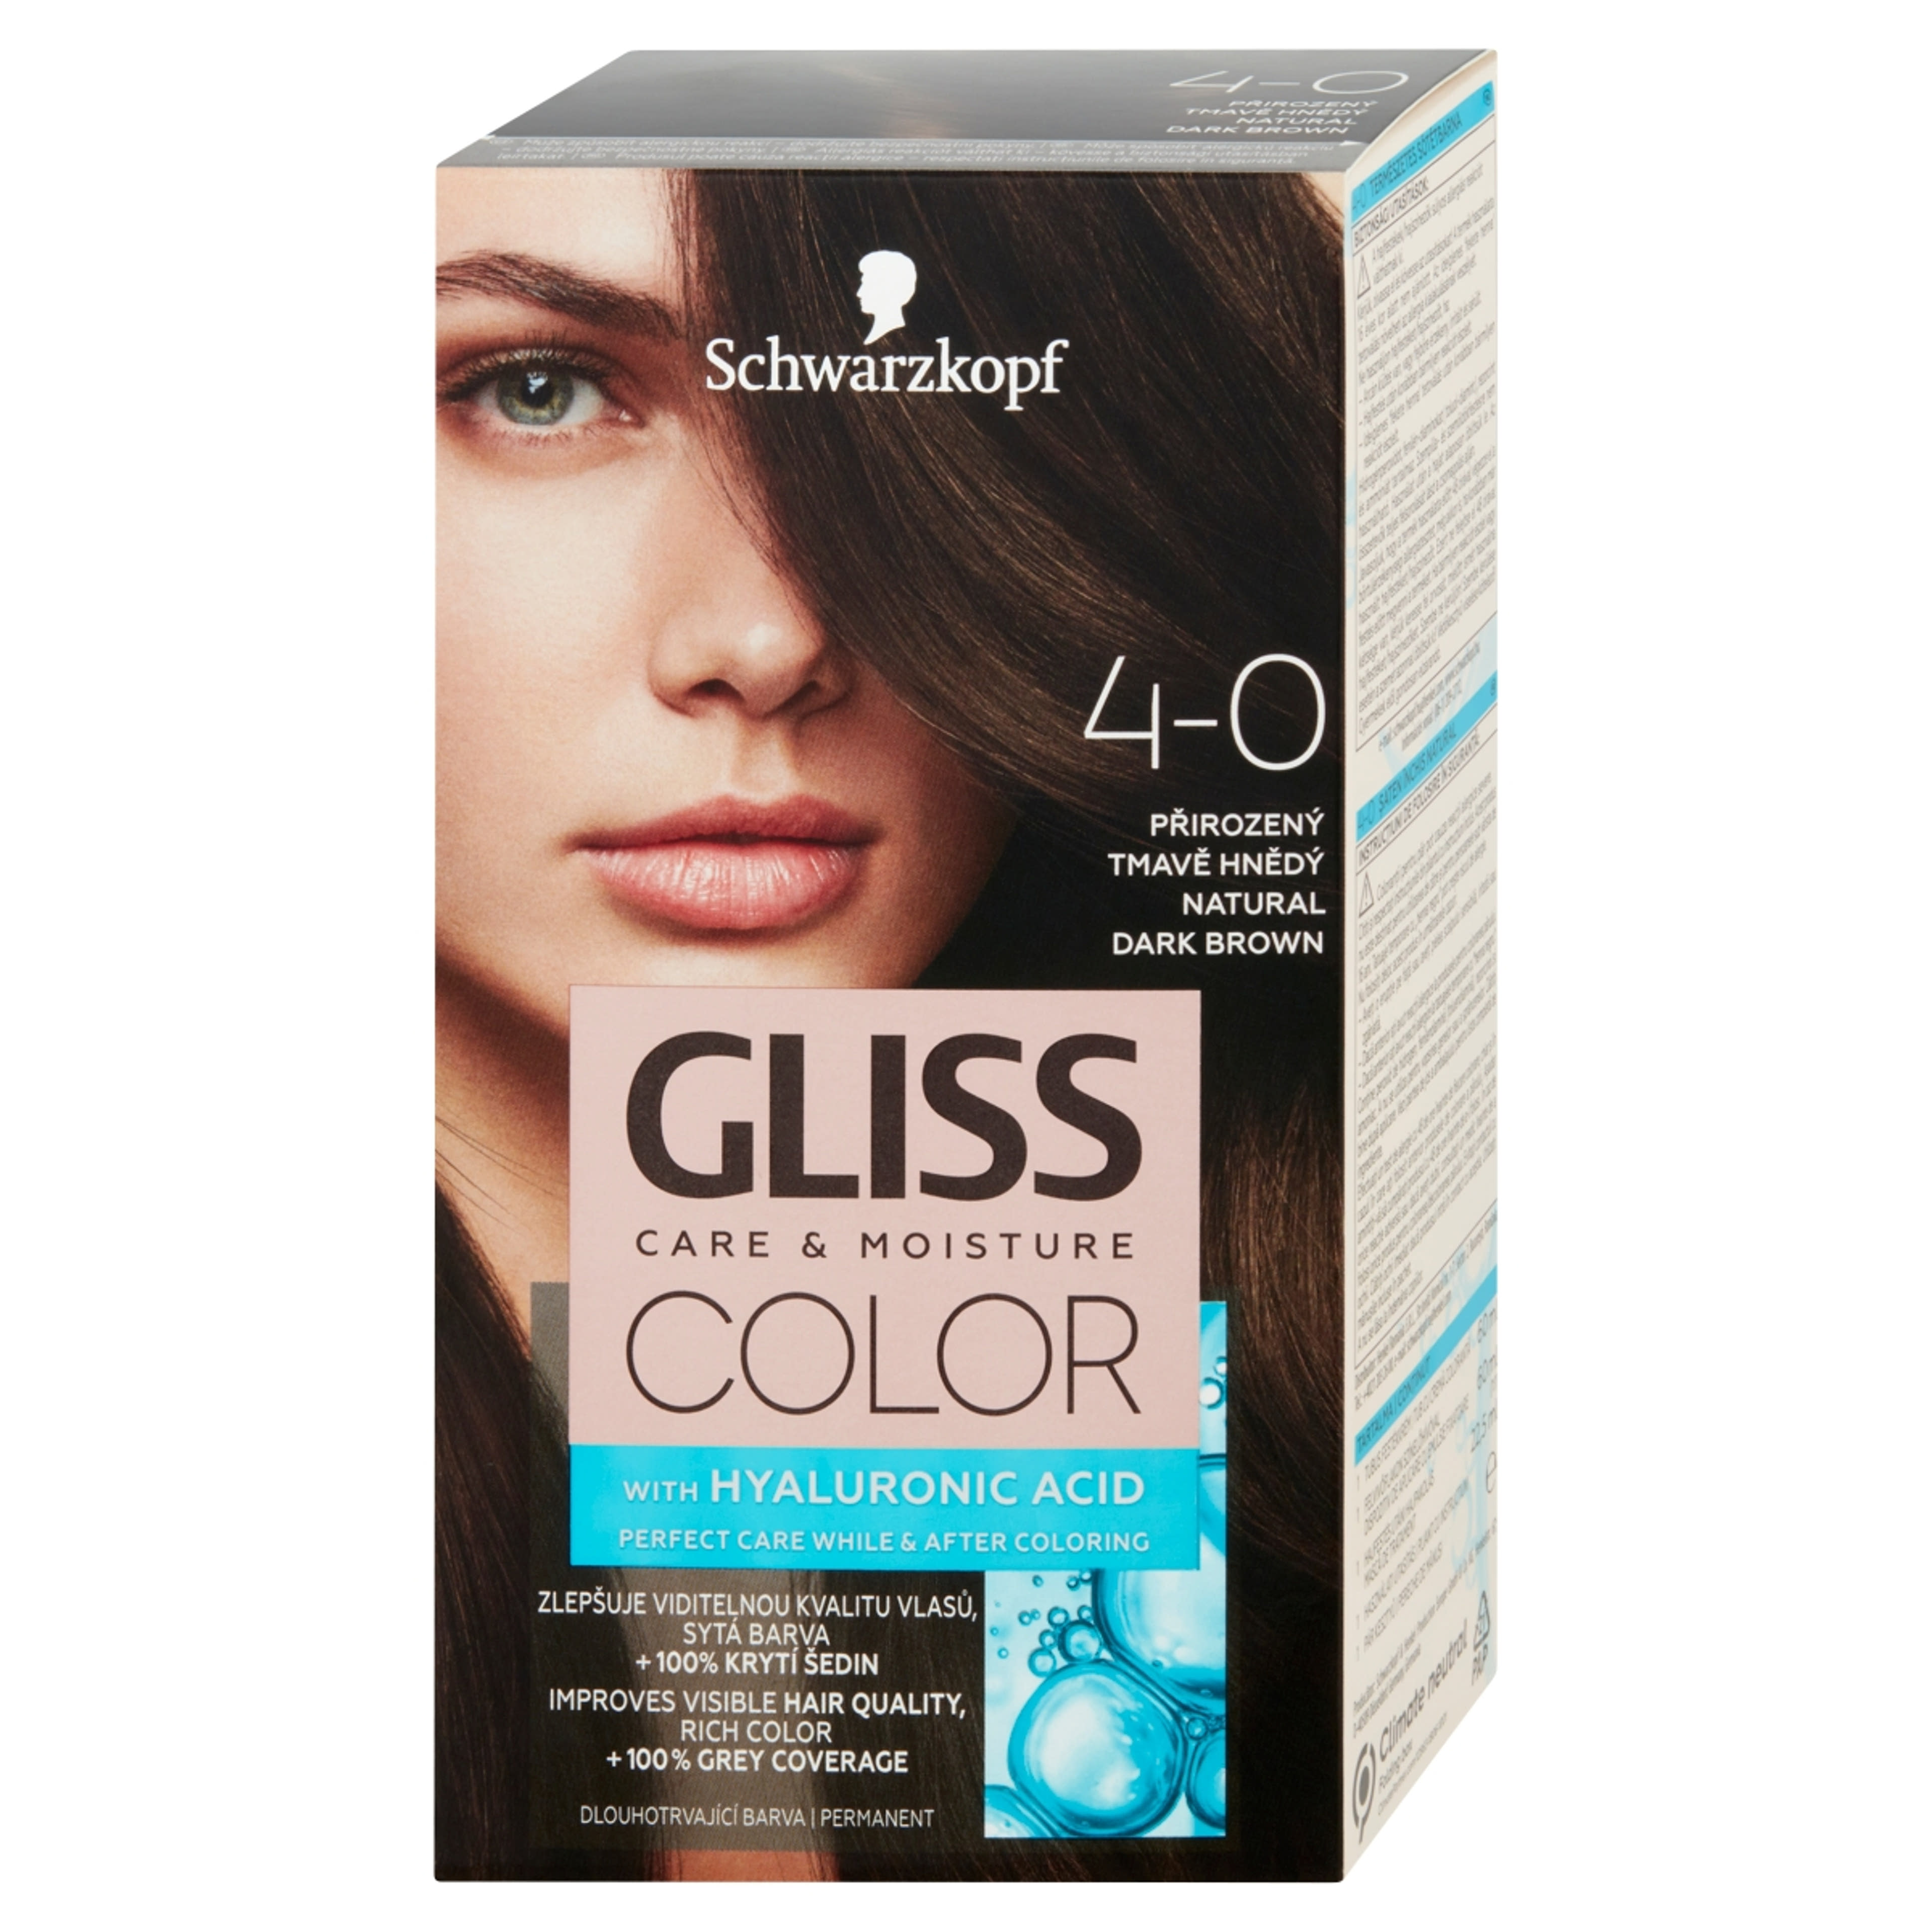 Gliss Color tartós hajfesték 4-0 Természetes sötétbarna - 1 db-3